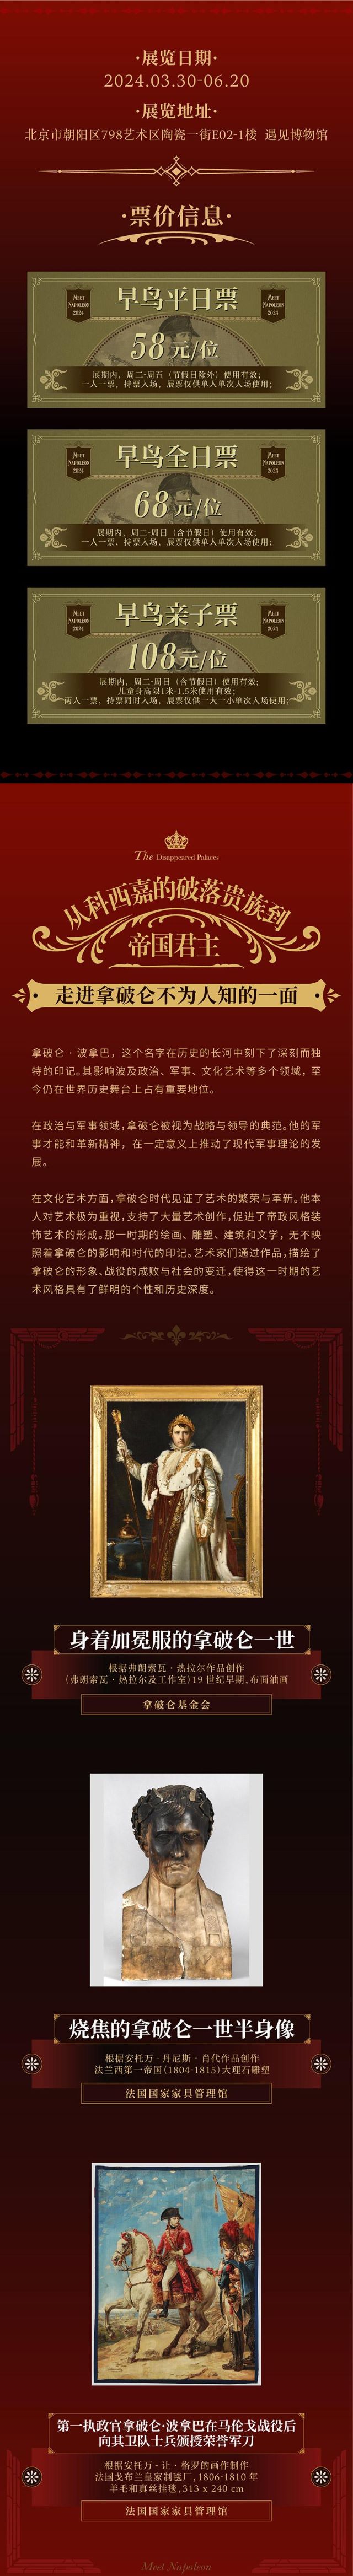 北京遇见拿破仑消失的宫殿3.jpg